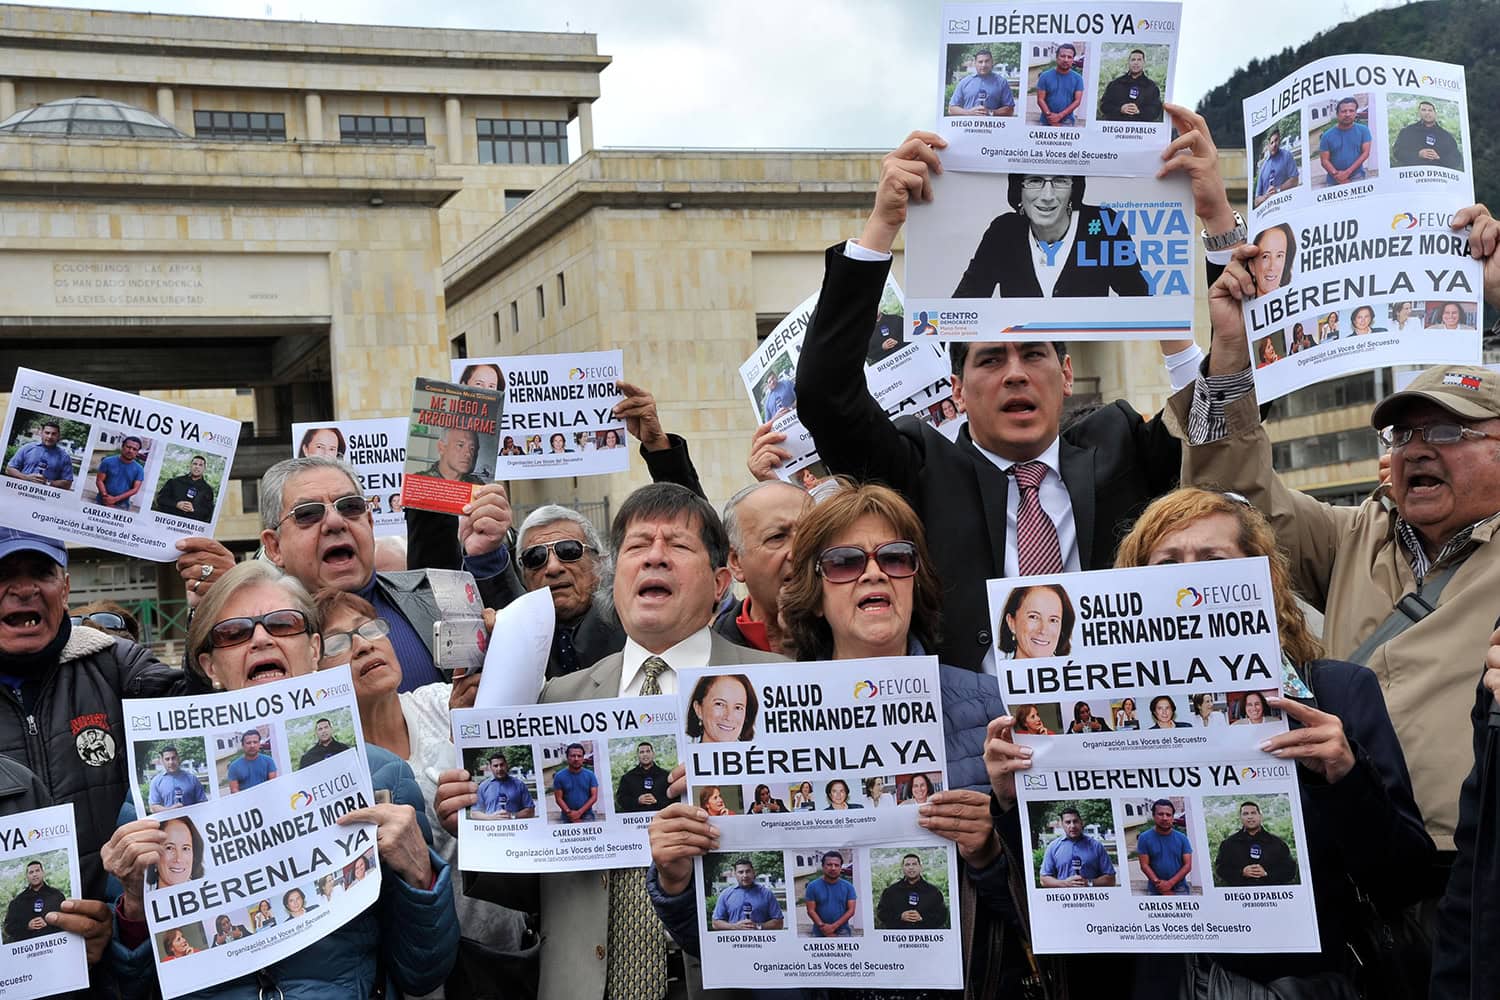 Colombia confirma el secuestro de la periodista española Salud Hernández